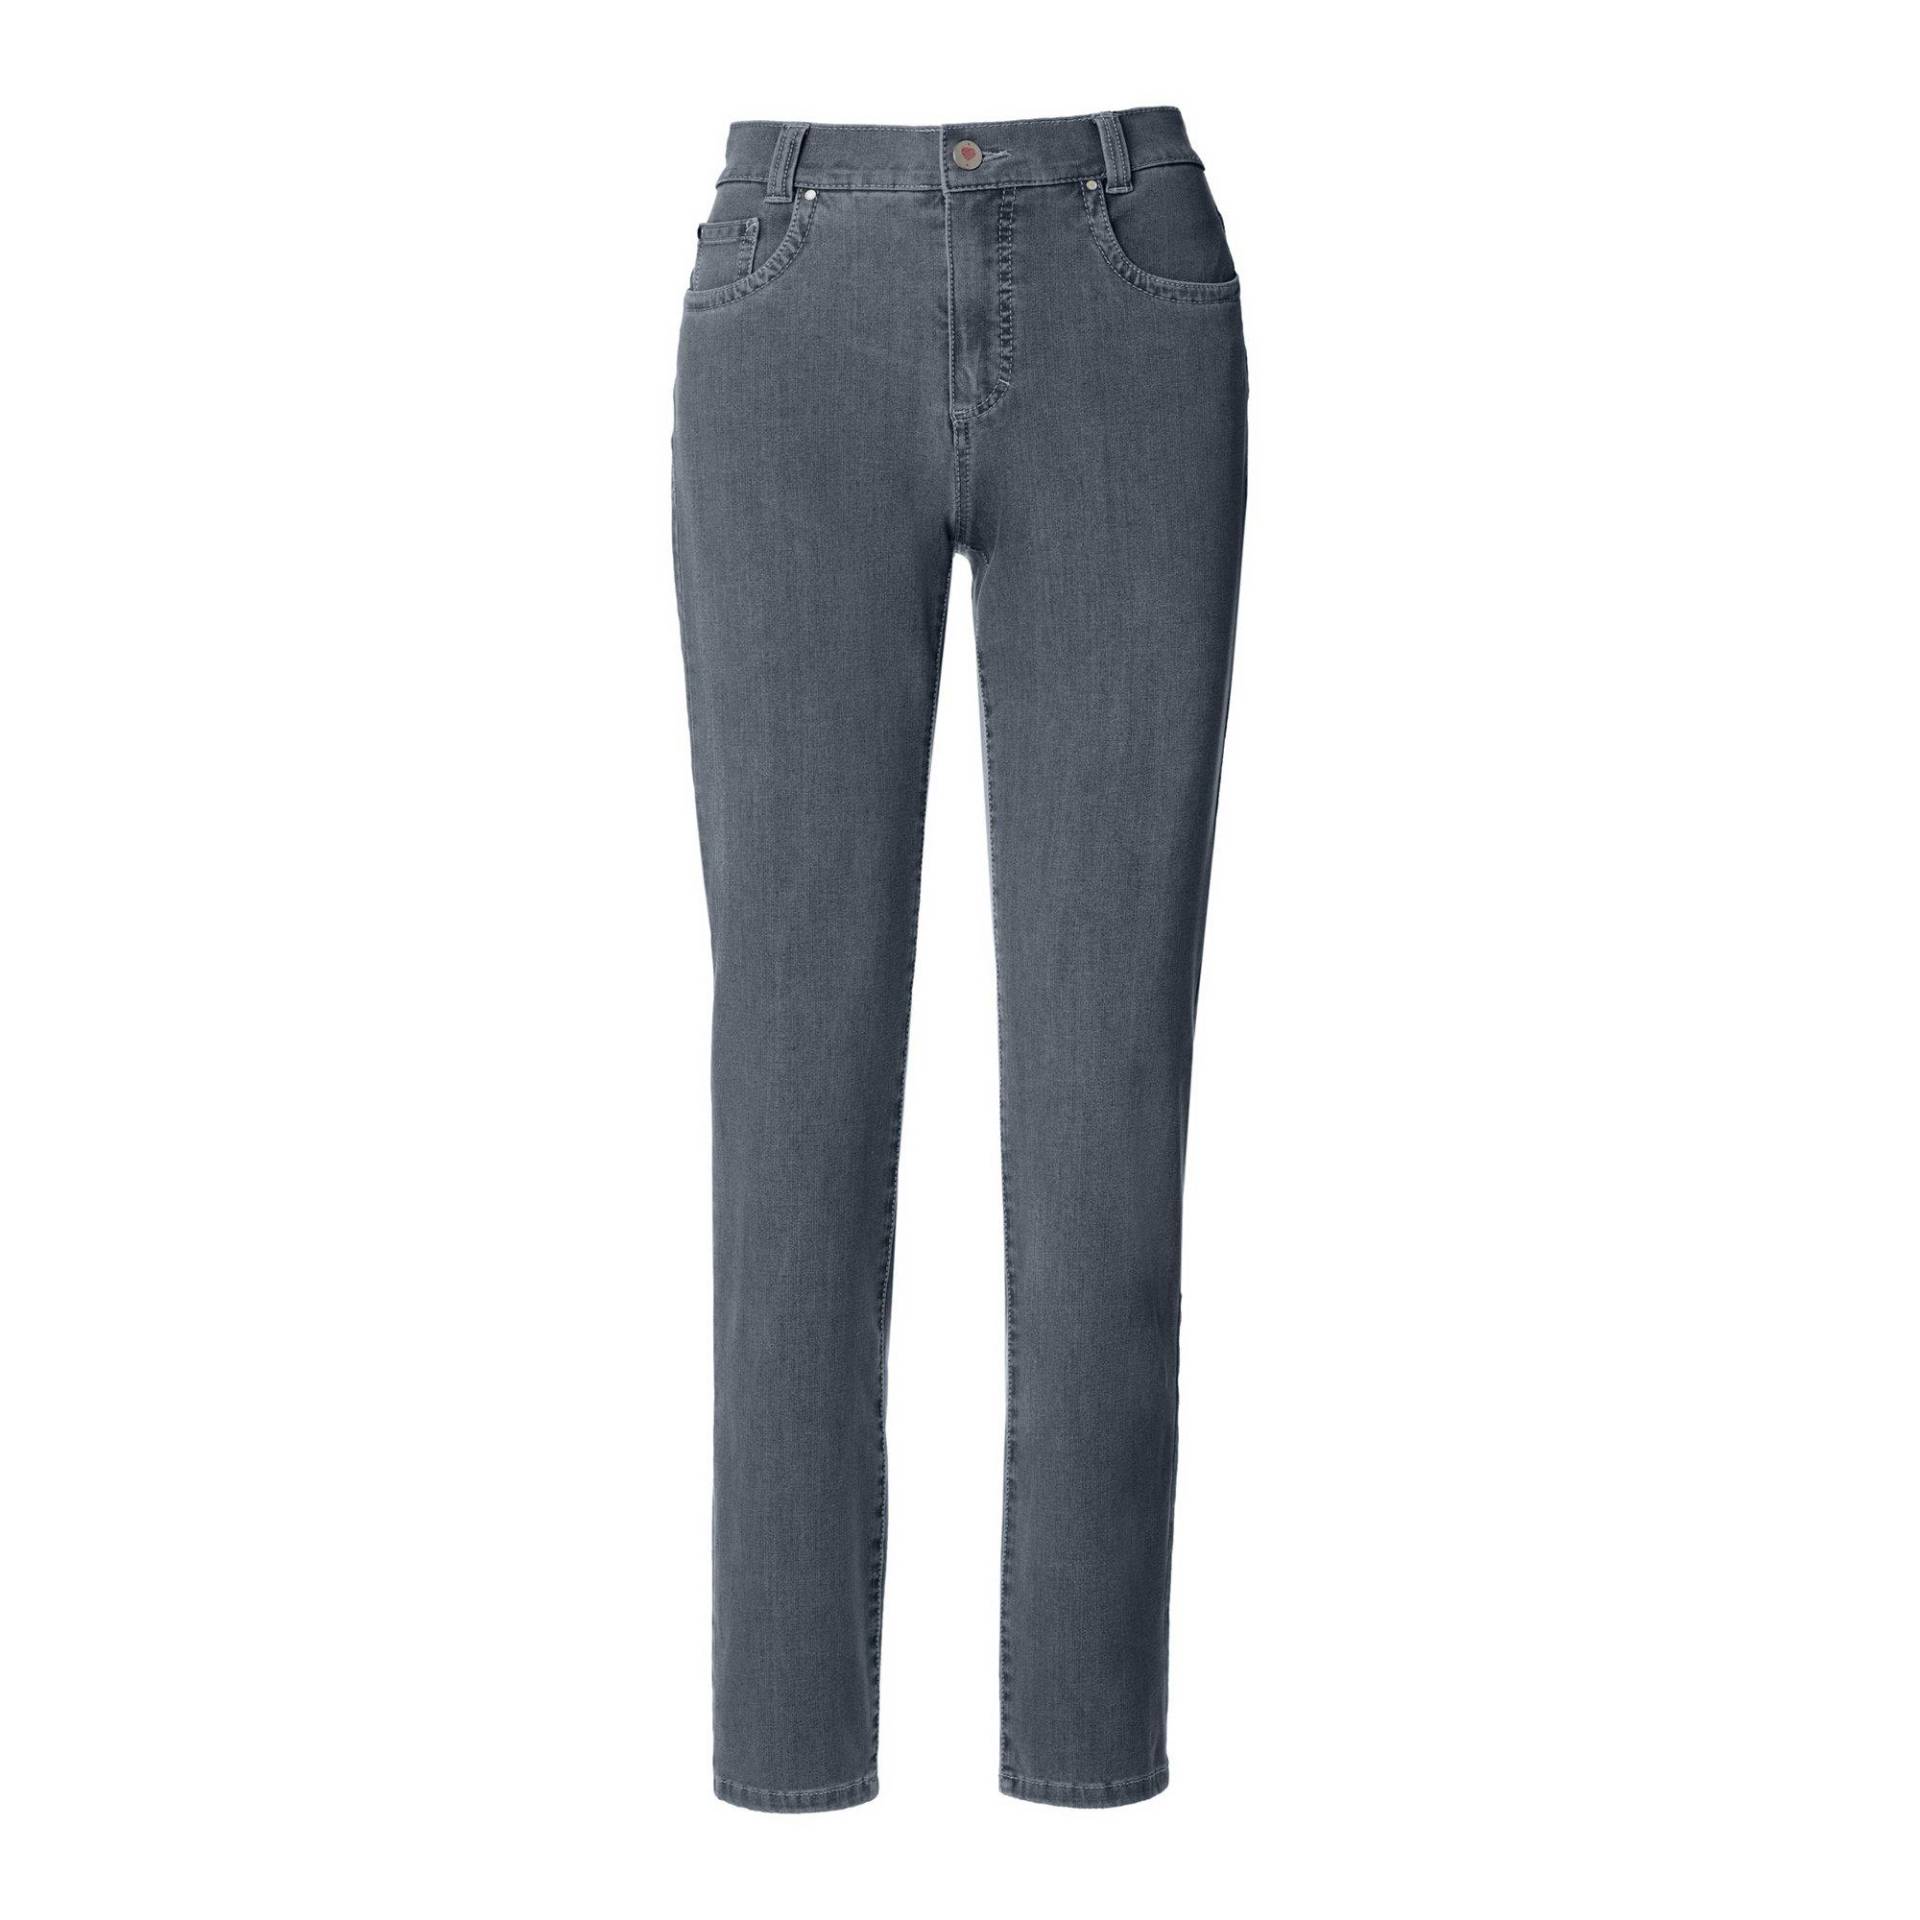 Jeans, Slim Fit Damen Blau Denim Dunkel W44 von ANNA MONTANA